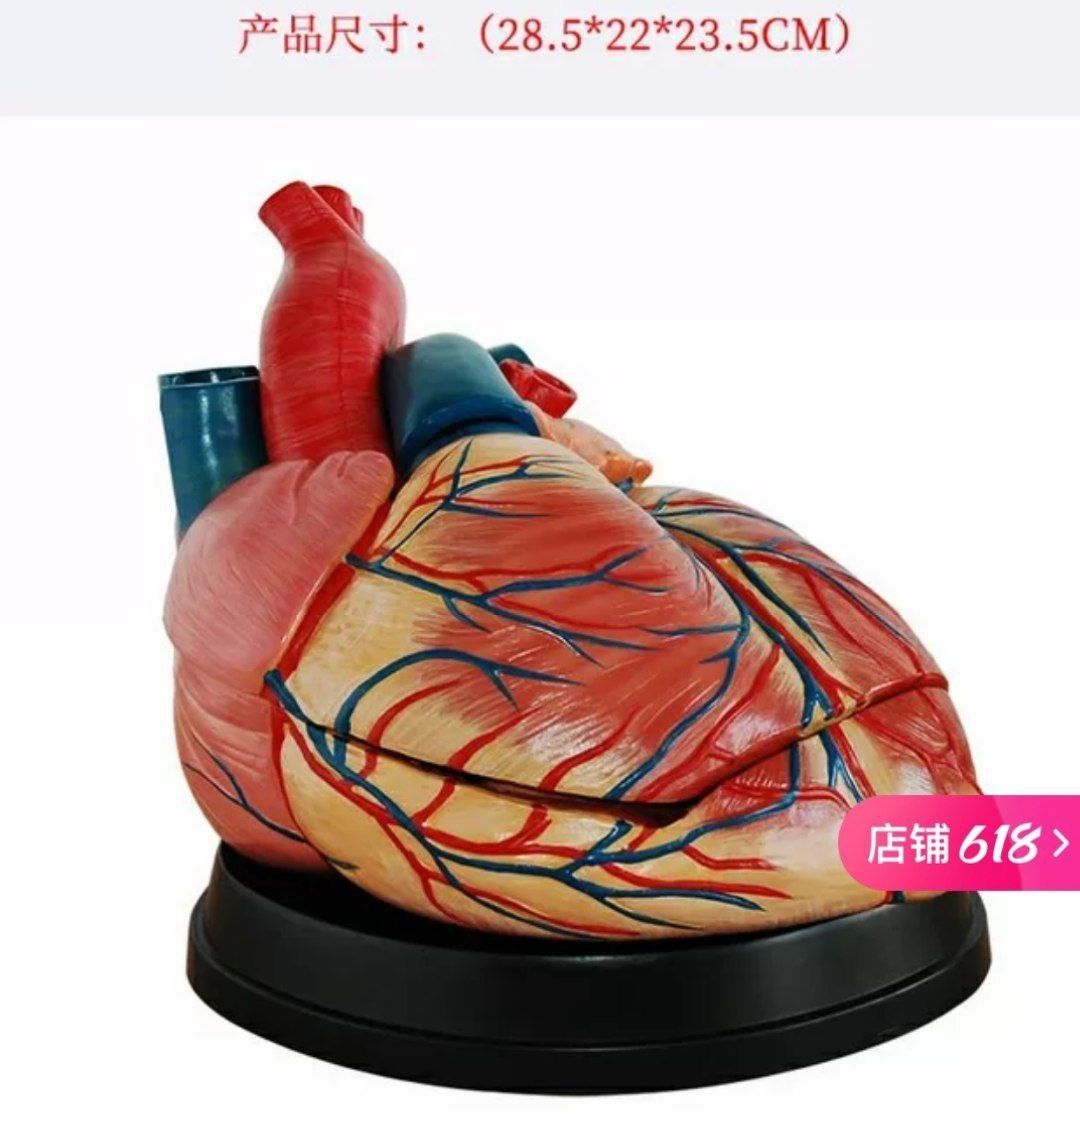 Модель сердца человека муляж сердце анатомическая модель сердца